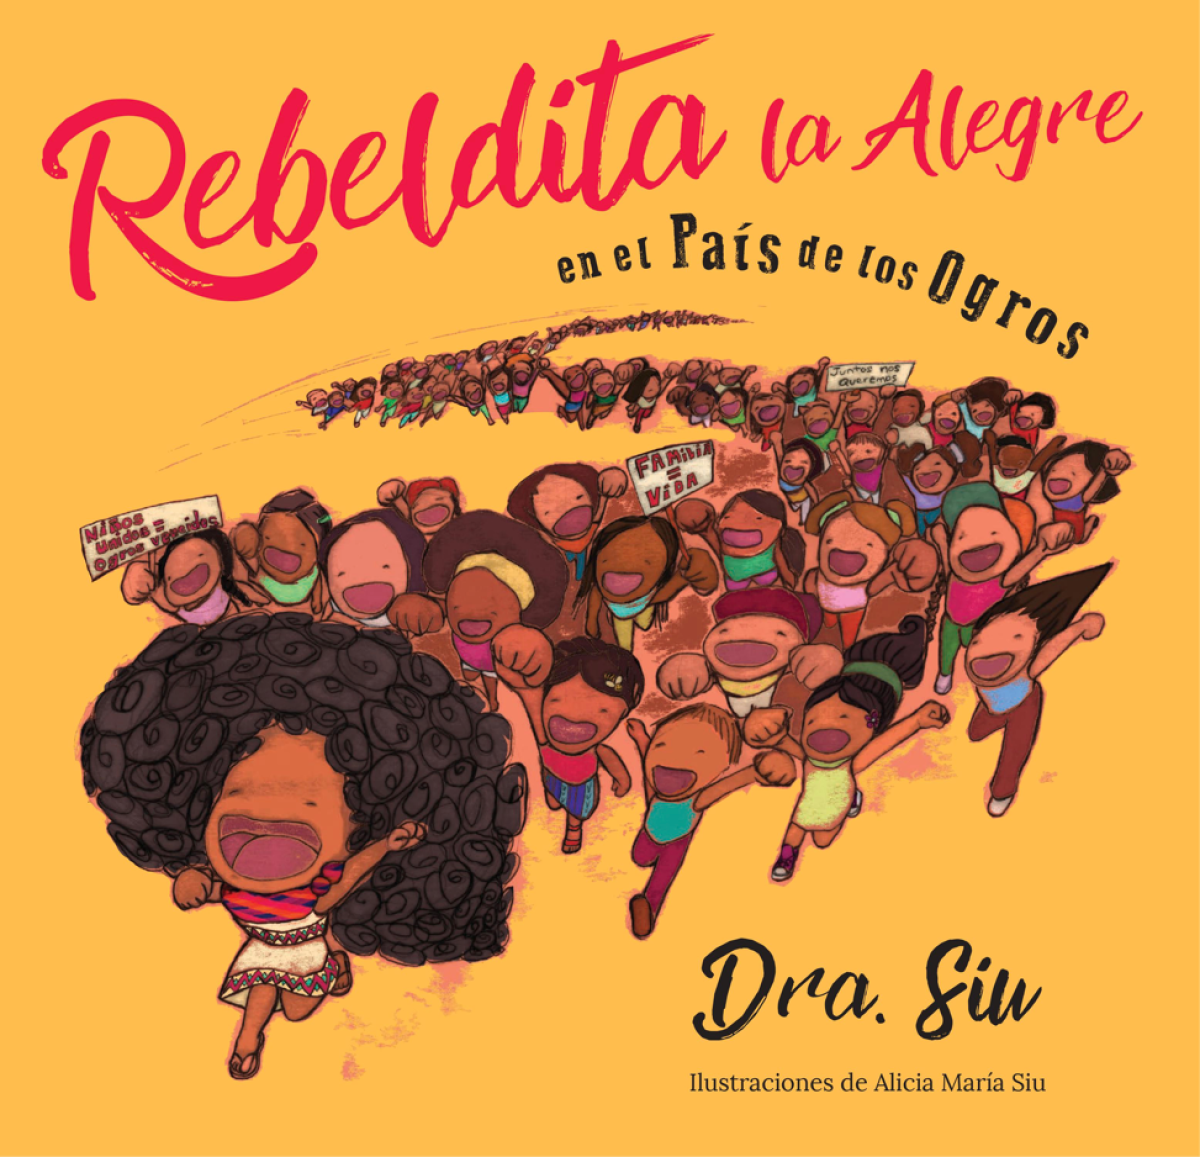 "Rebeldita la Alegre en el País de los Ogros" book cover